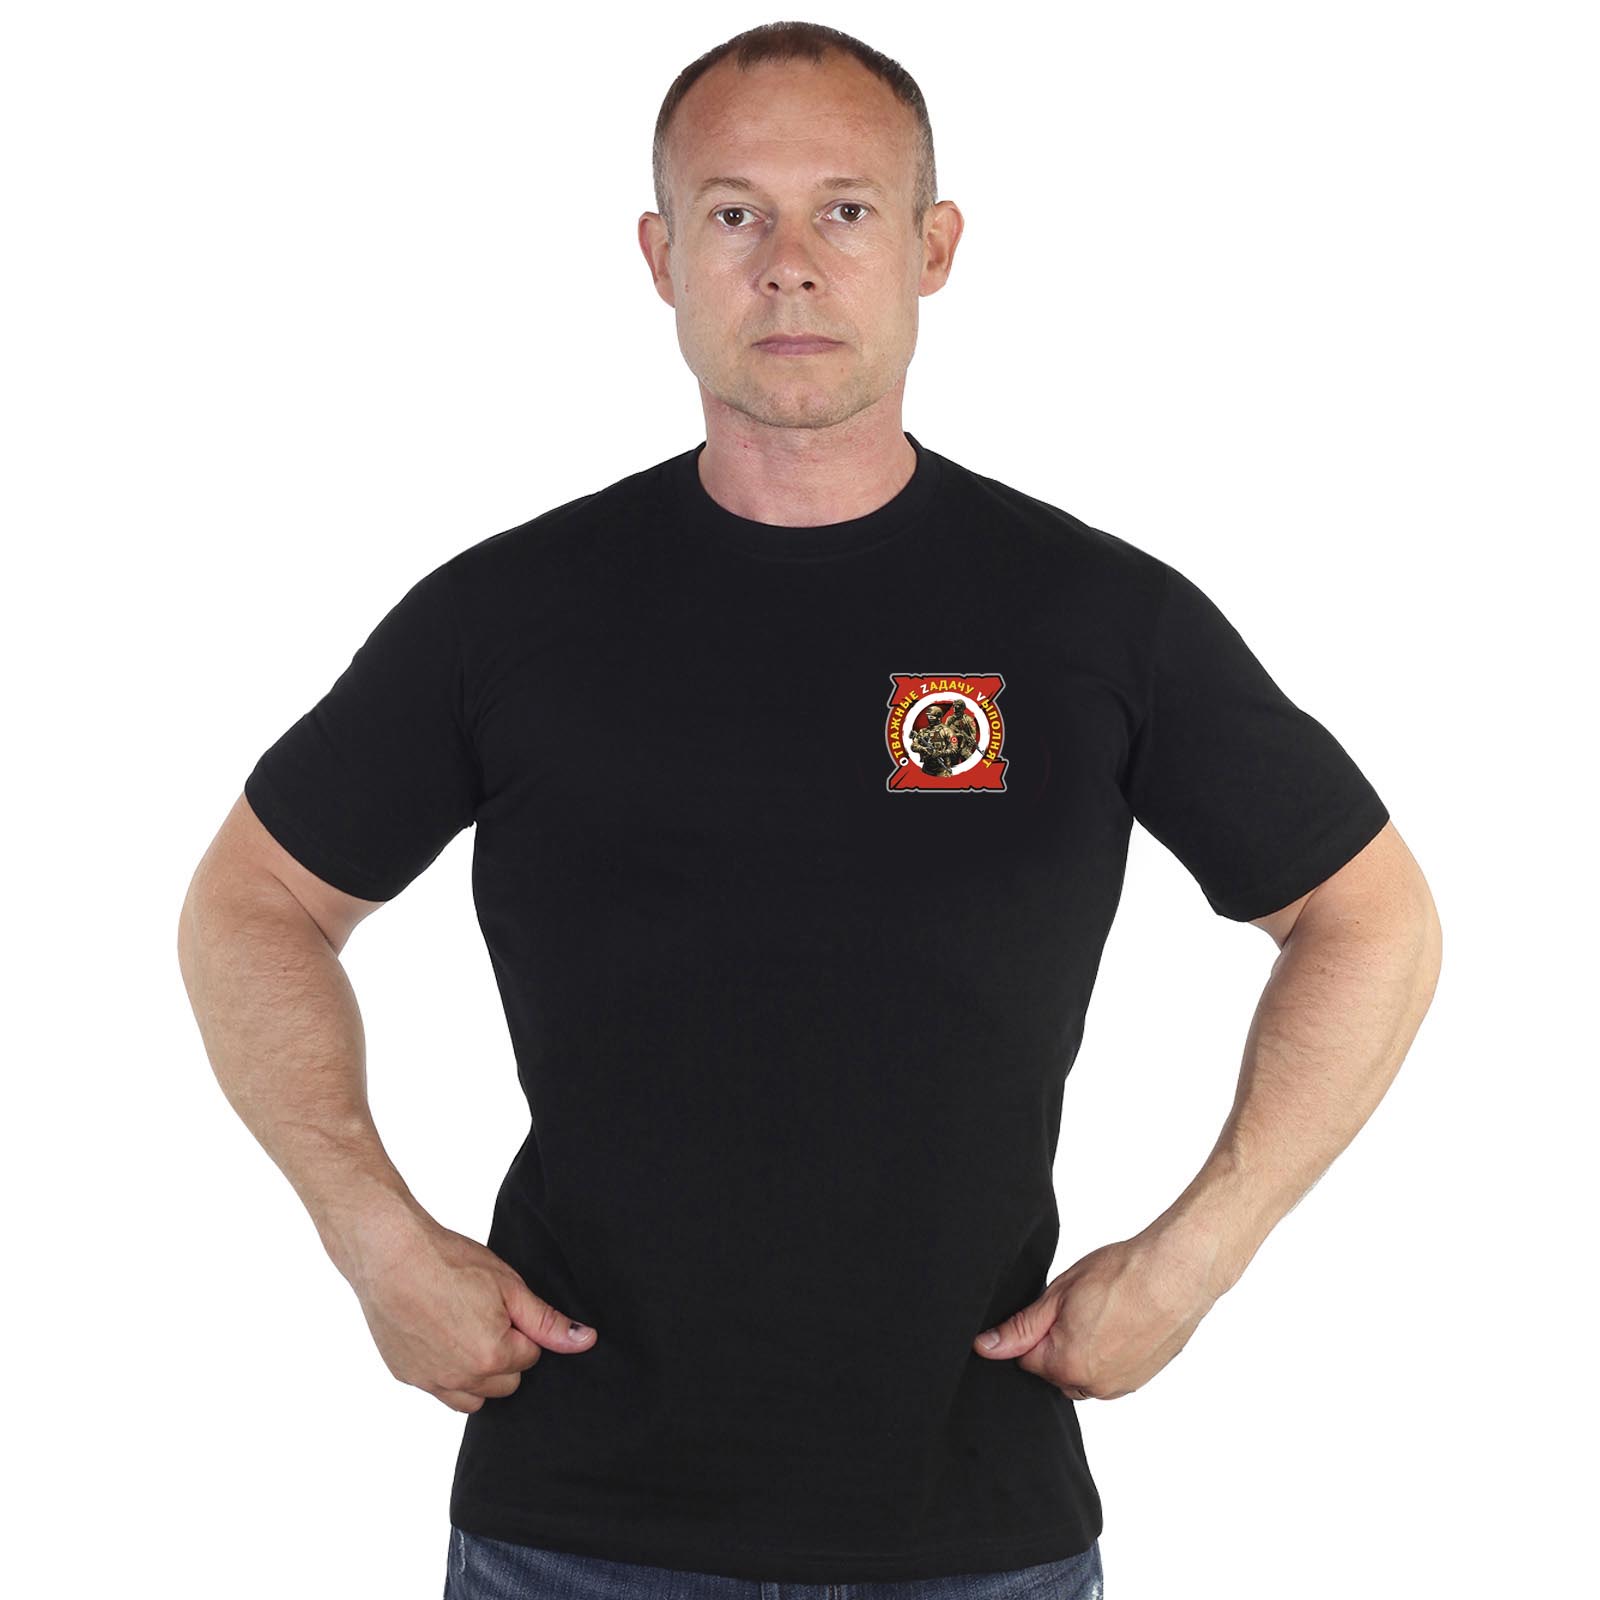 Чёрная футболка с термопринтом "Отважные Zадачу Vыполнят"